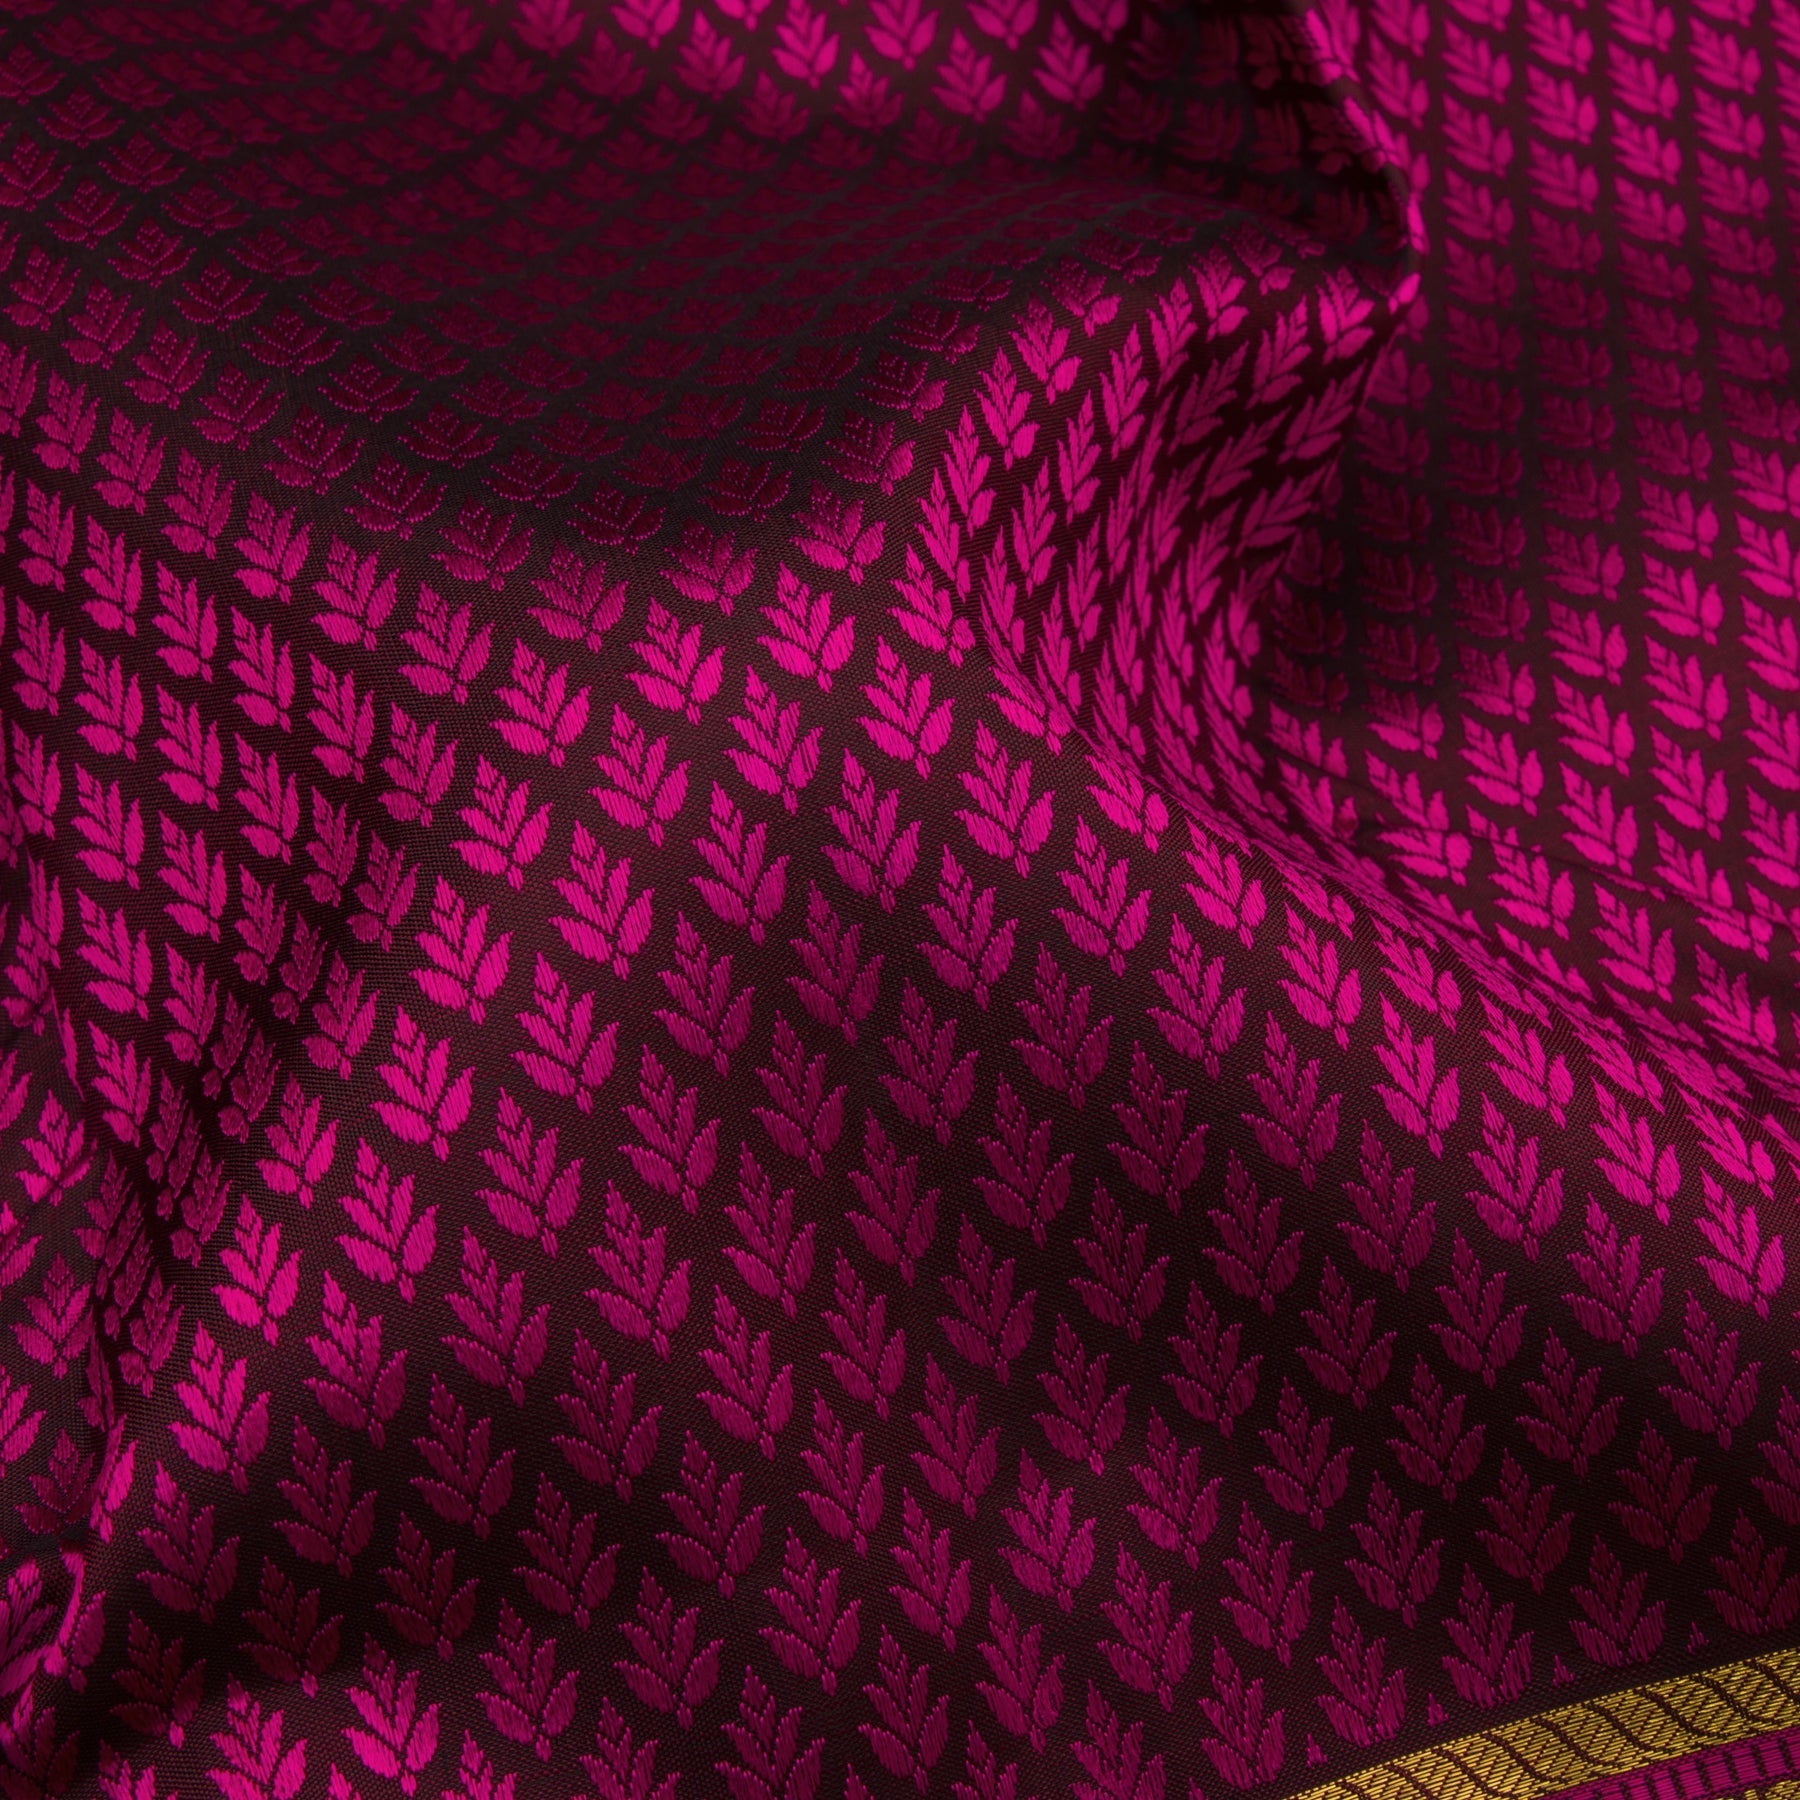 Kanakavalli Kanjivaram Silk Sari 21-100-HS001-01442 - Fabric View